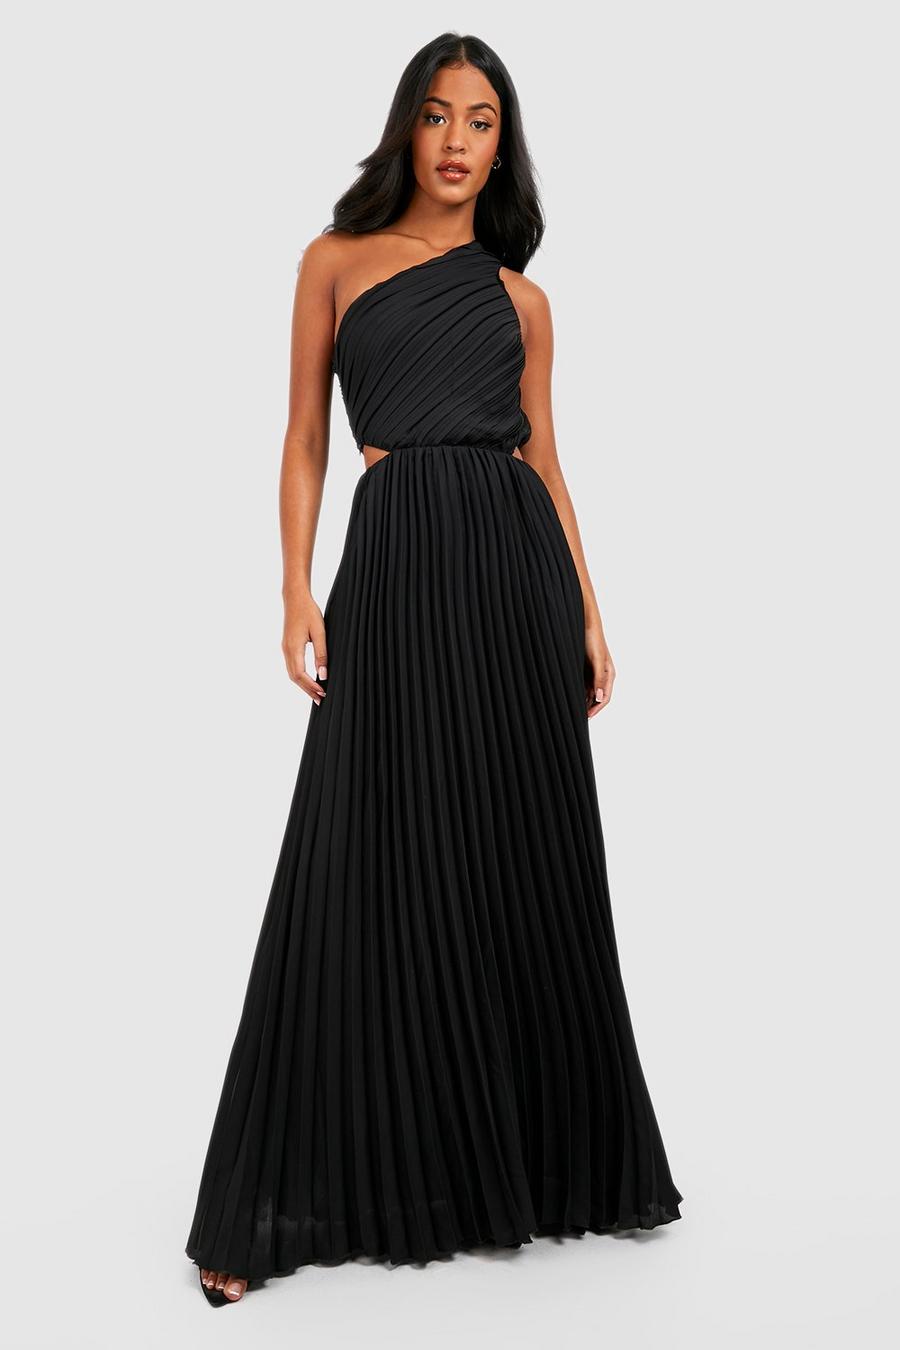 שחור שמלת מקסי One Shoulder עם קפלים, לנשים גבוהות image number 1